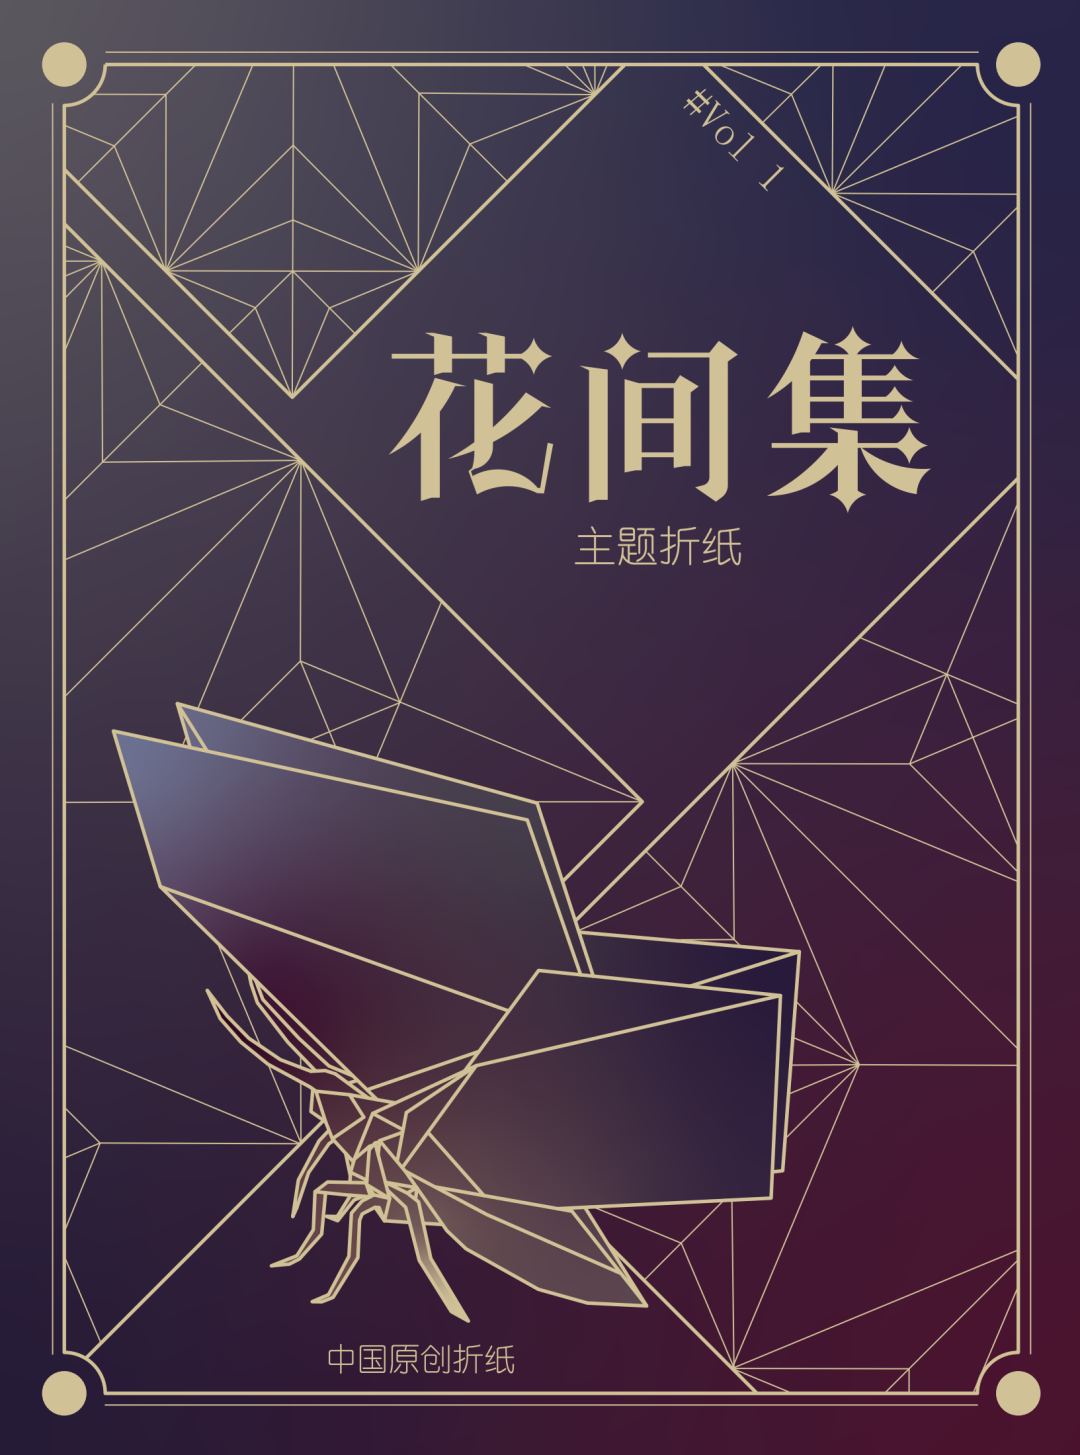 中国第一本折纸蝴蝶合集《花间集》即将售罄！